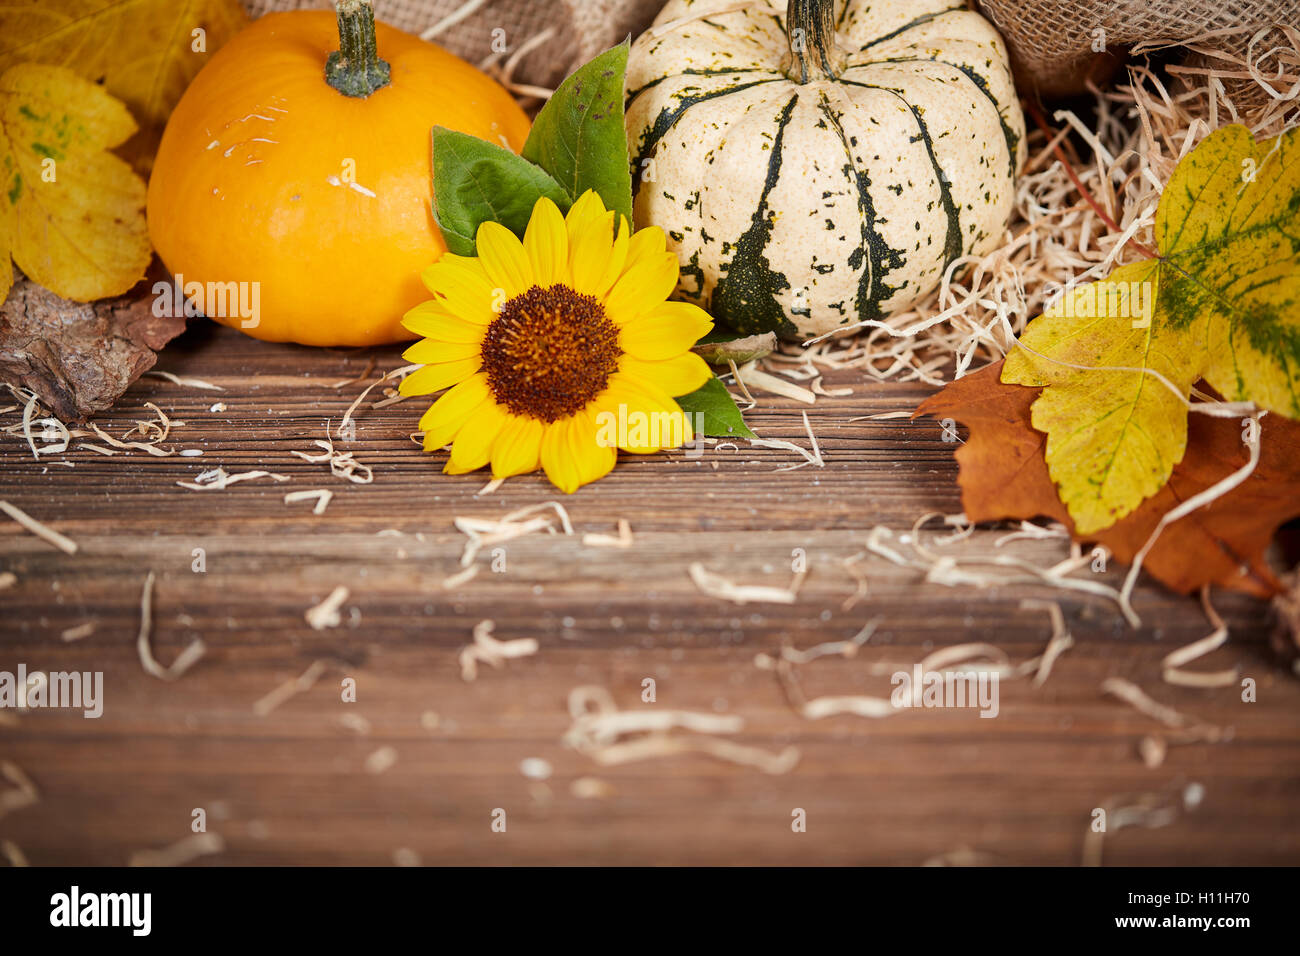 Fondo de Acción de Gracias con calabazas, hojas y girasol sobre una tabla de madera marrón Foto de stock